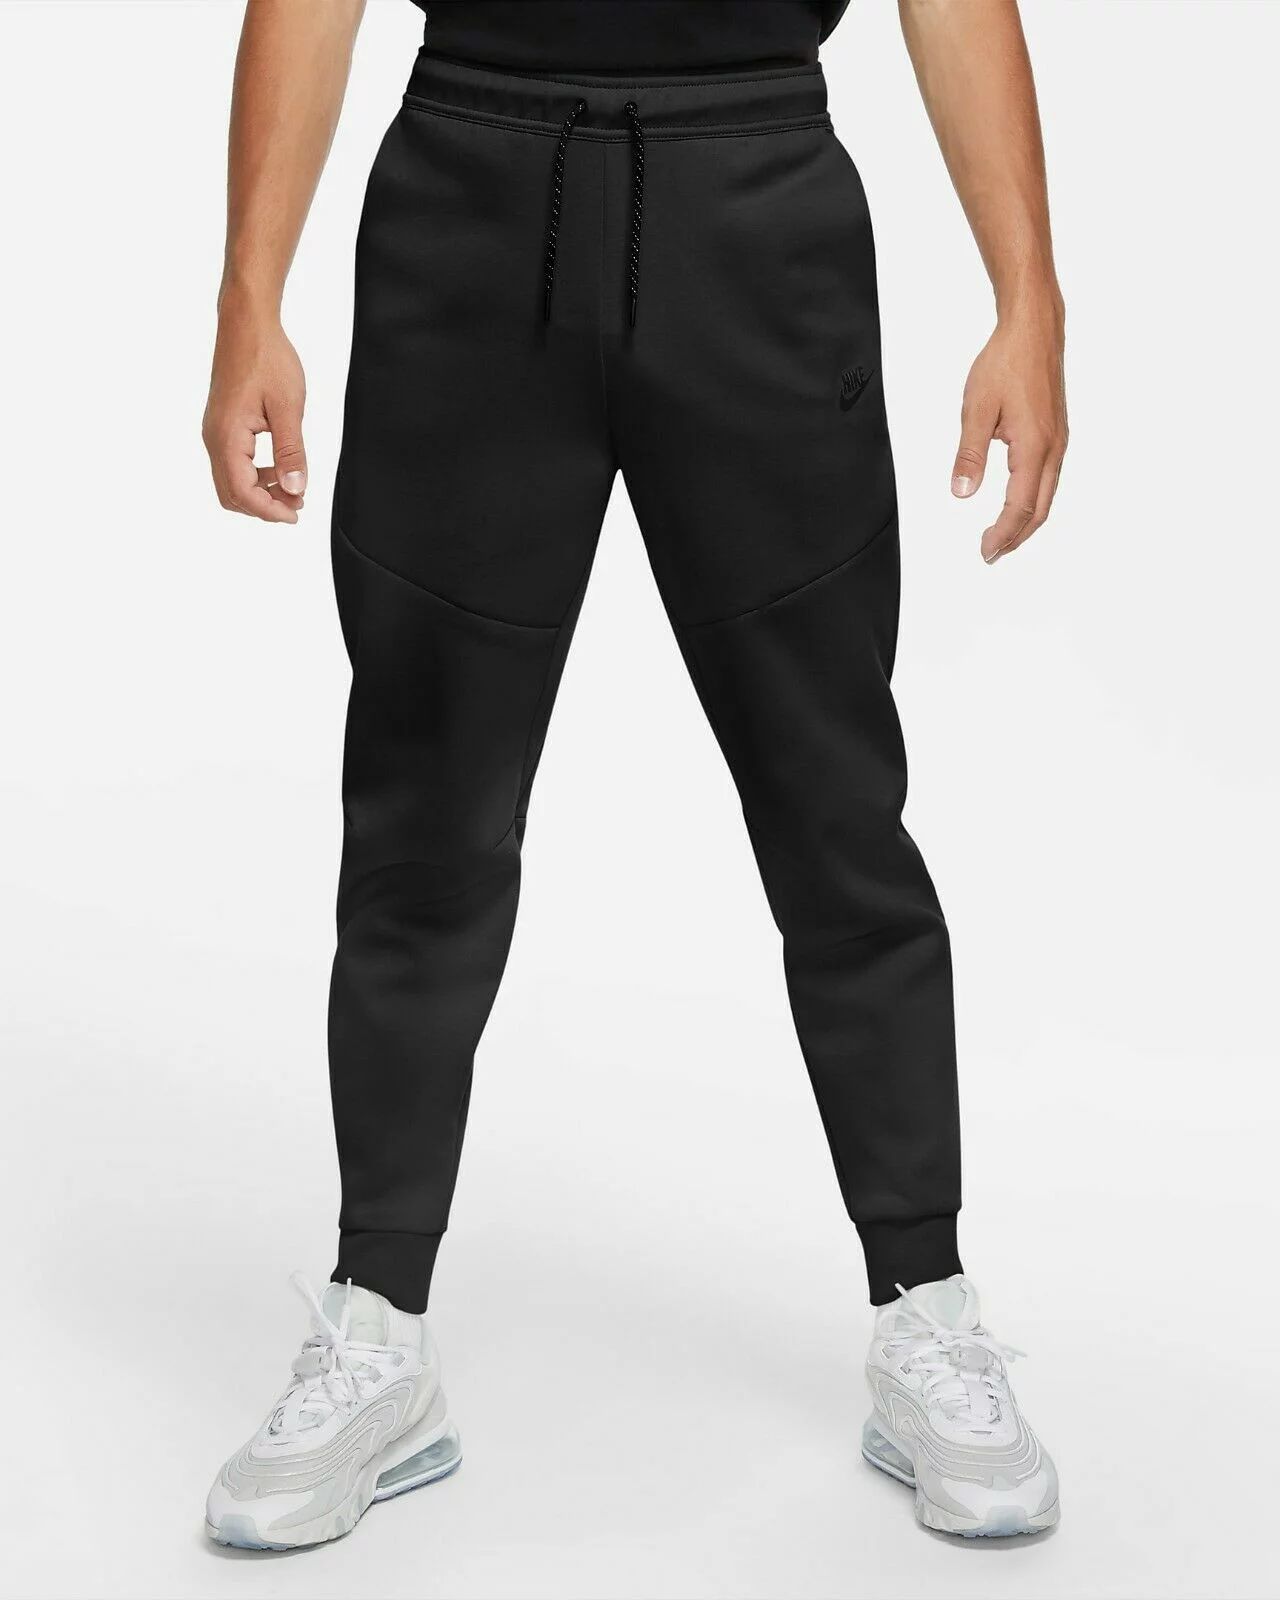 Nike Sportswear Tech Fleece Men's Joggers Pants Size L - Walmart.com | Walmart (US)